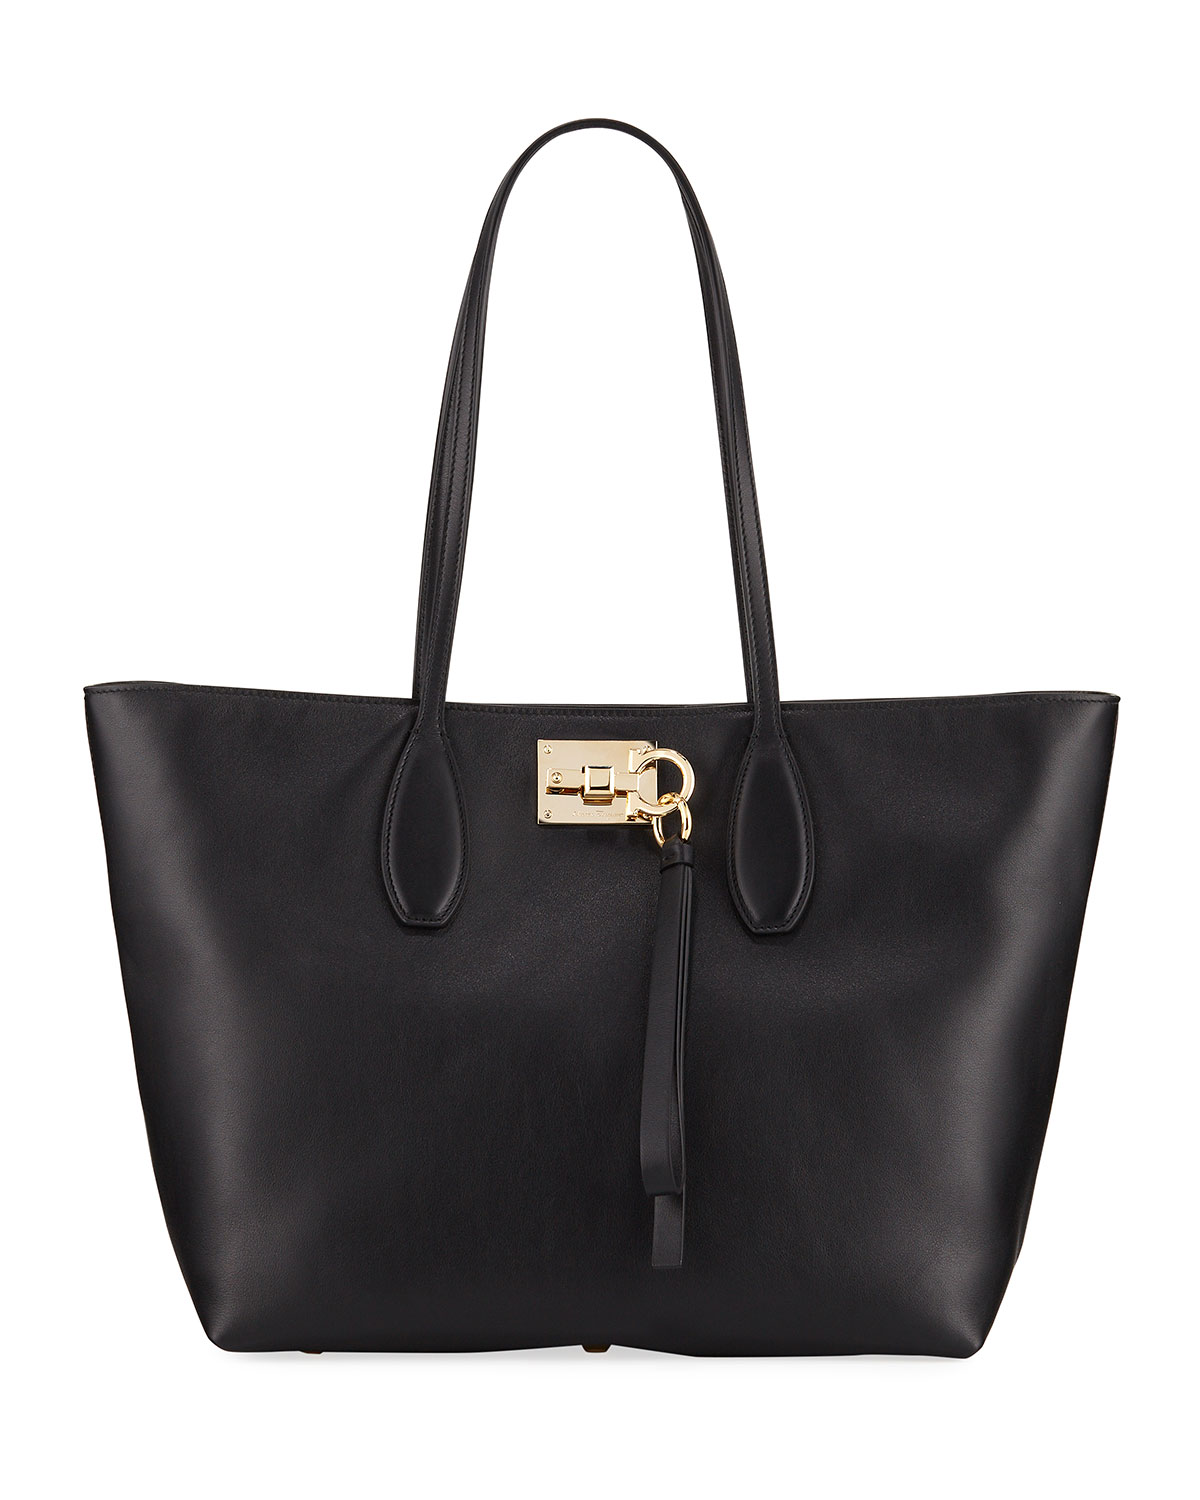 Salvatore Ferragamo Studio Small Leather Tote Bag In Black | ModeSens